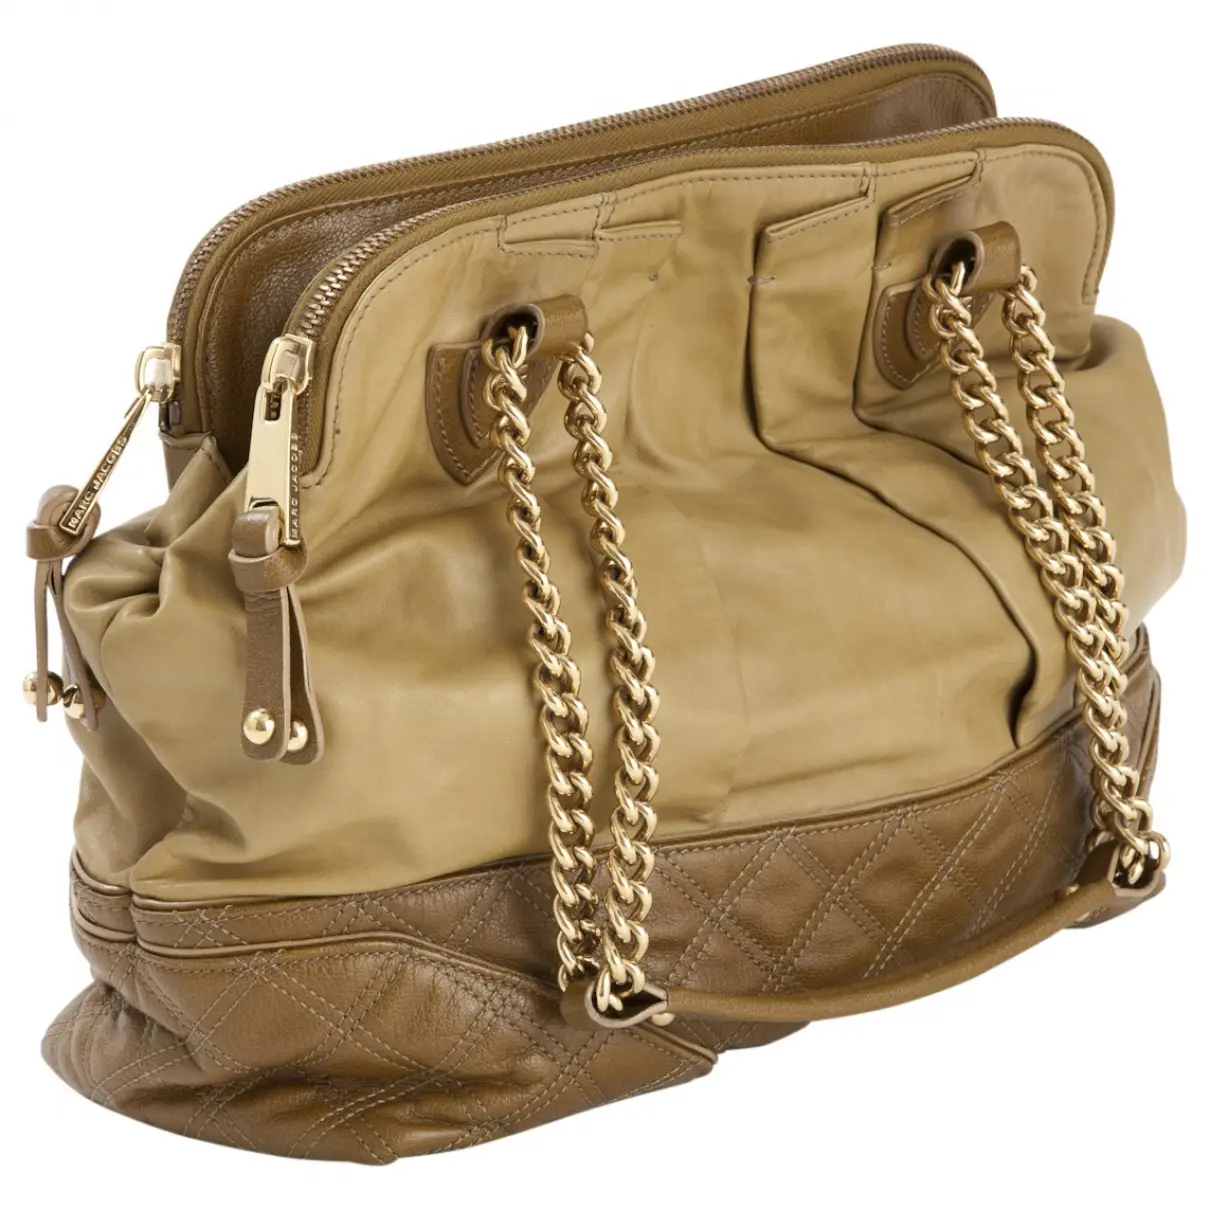 Marc Jacobs Stam leather handbag for sale